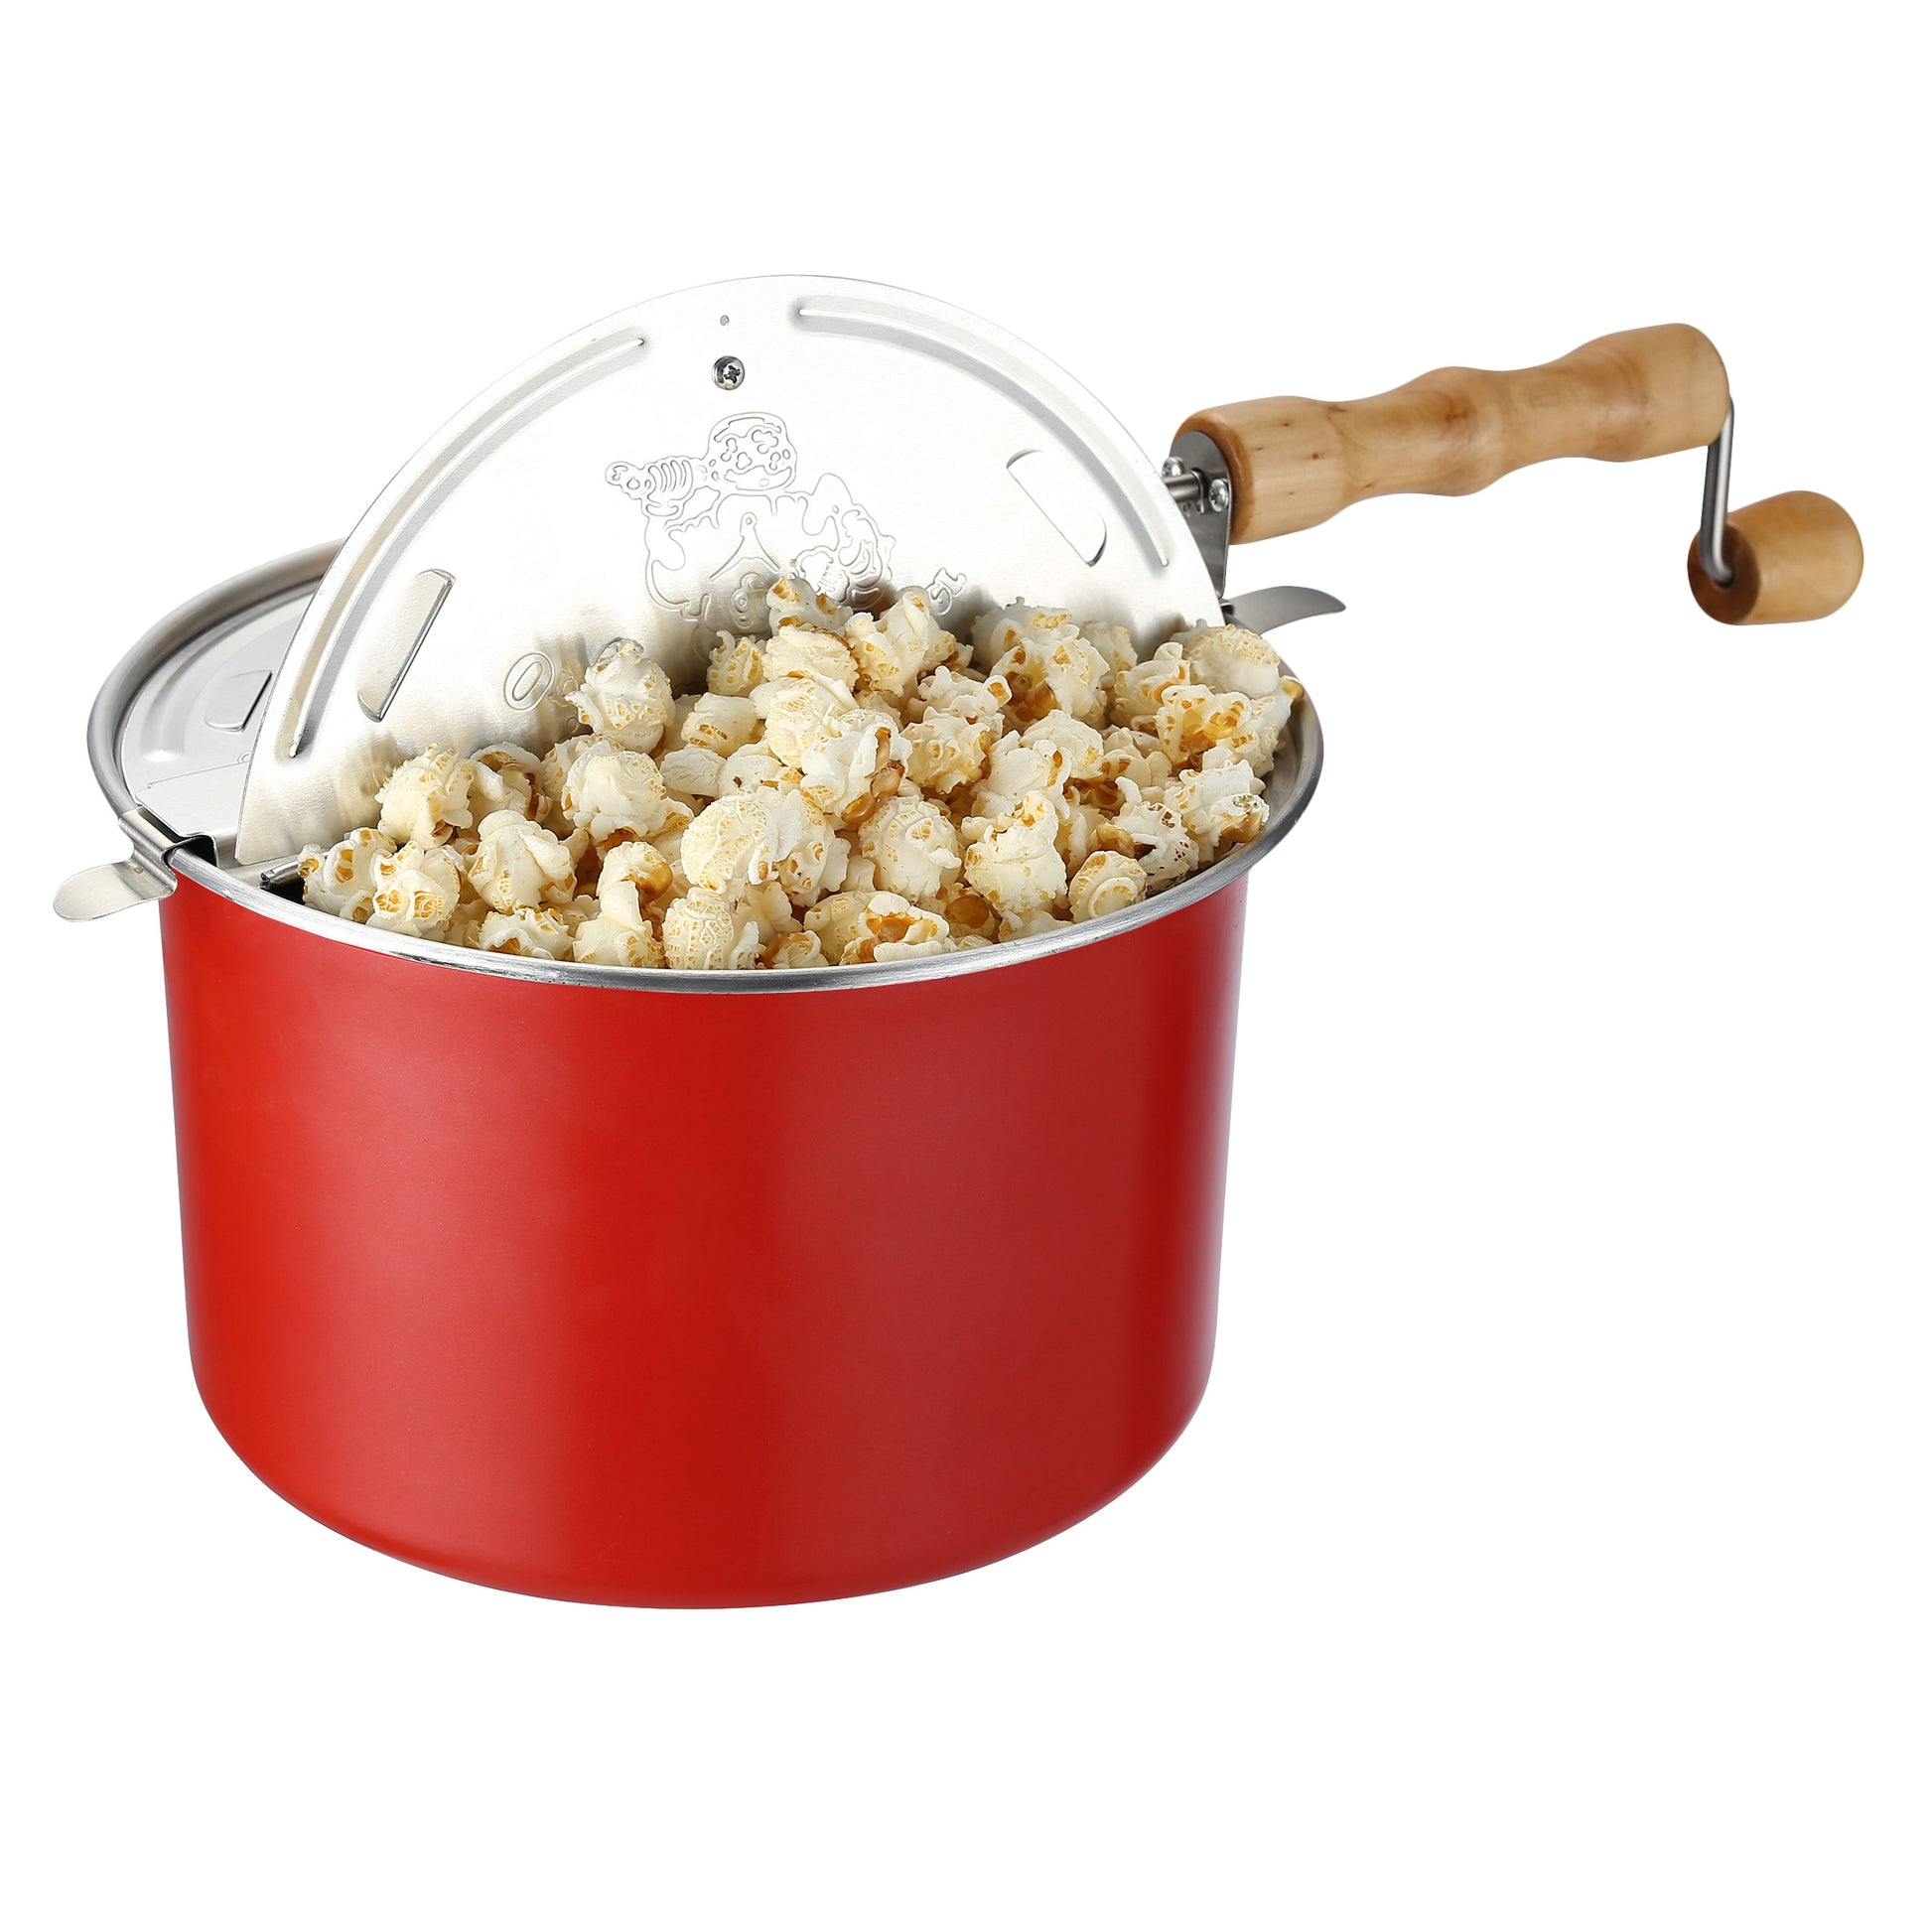 Popcorn maker  Popcorn maker, Popcorn, Pop popcorn